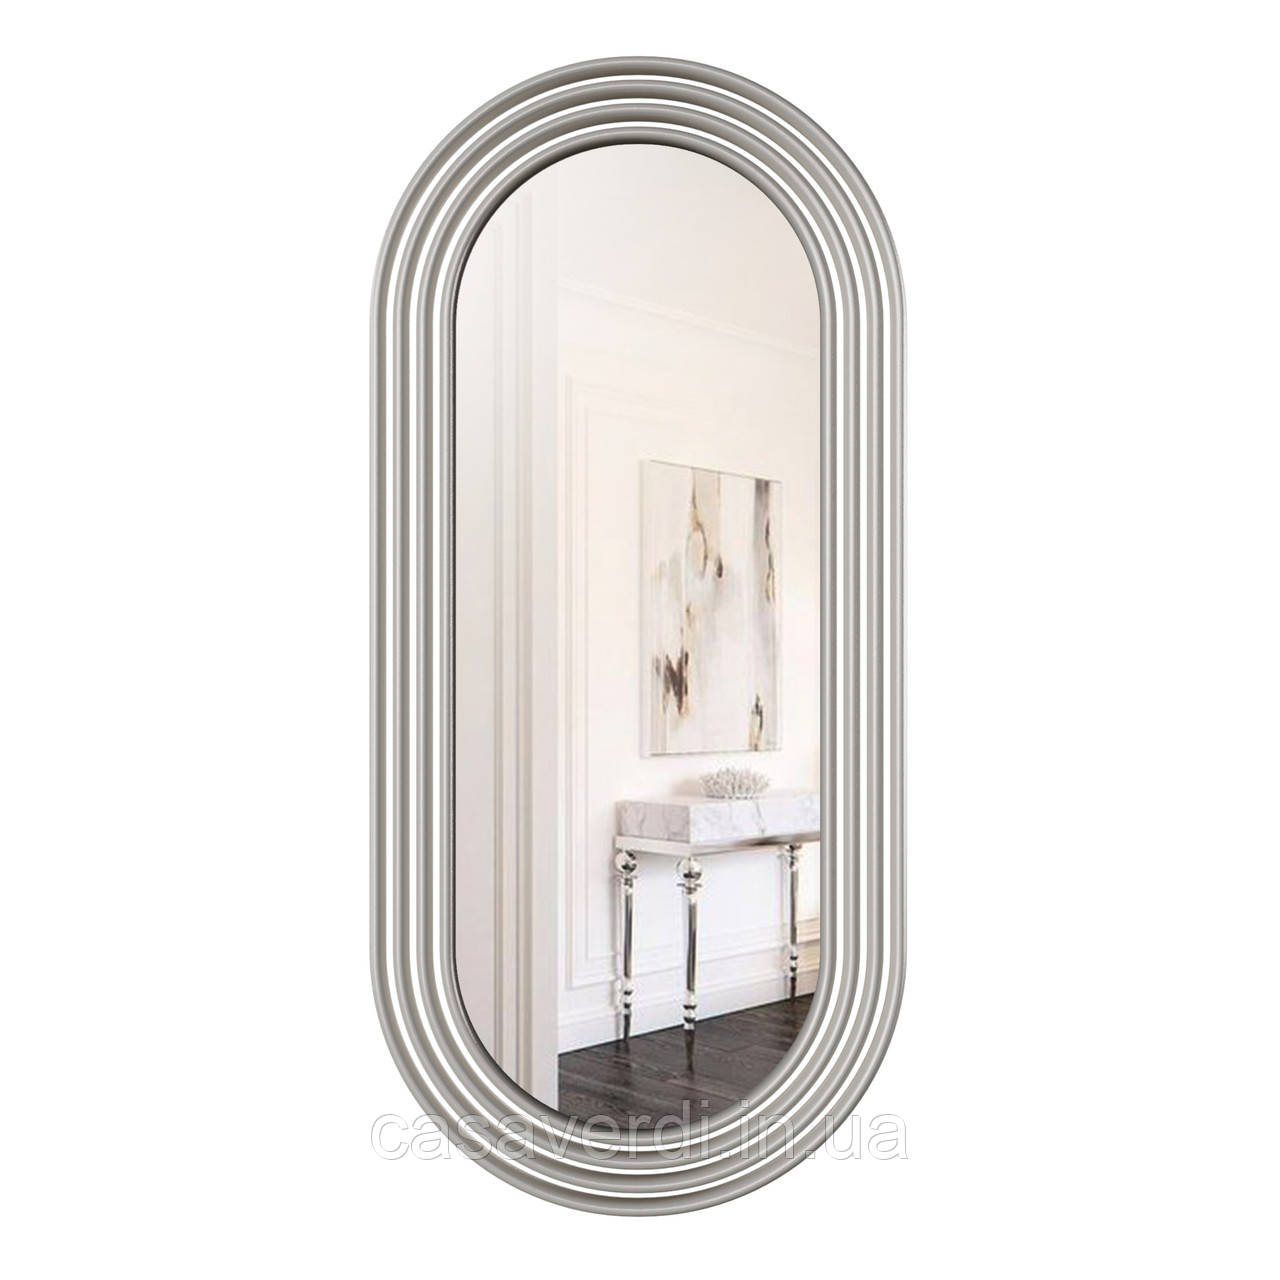 Дзеркало настінне Casa Verdi Zero срібло 174 см х 80 см. З рамою МДФ, розмір дзеркала 148 см х 55 см